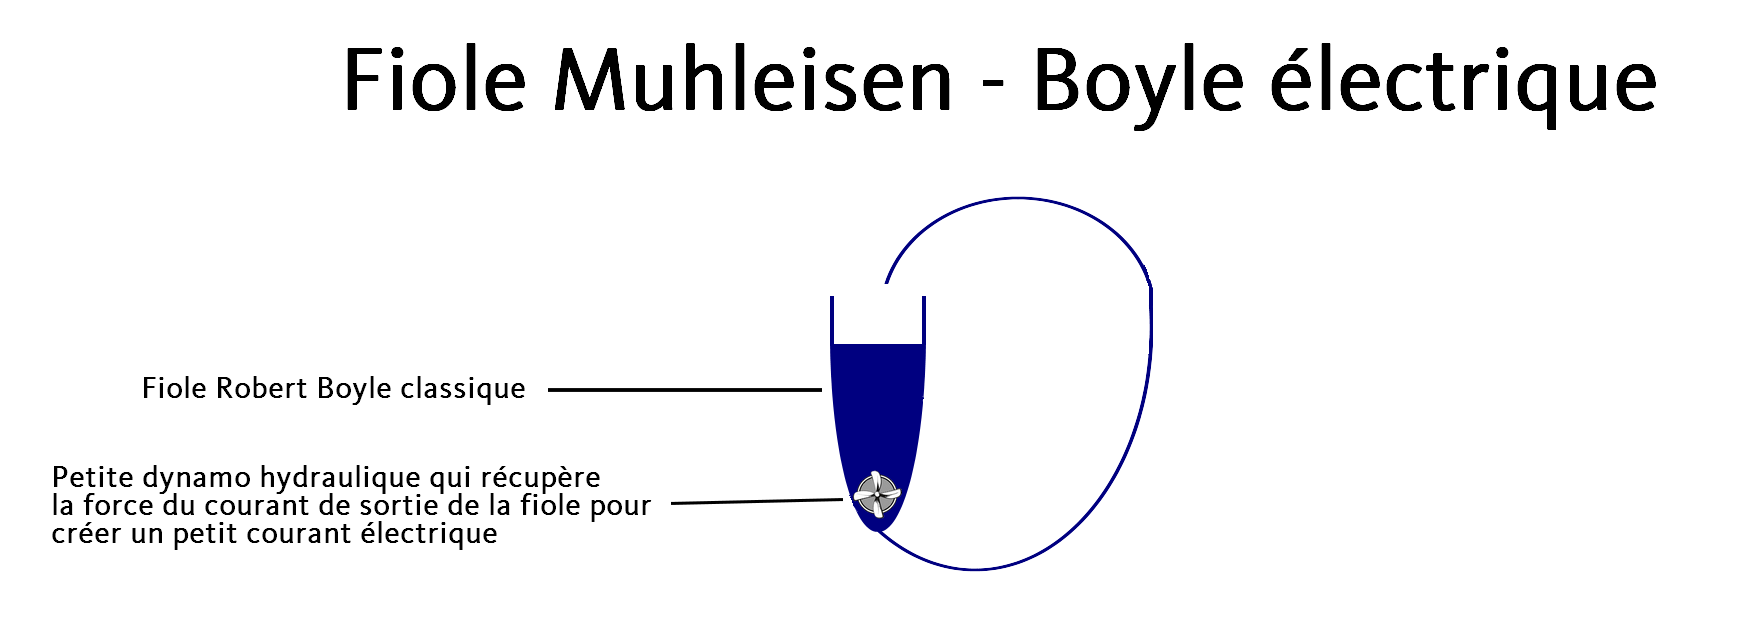 La fiole Muhleisen - Boyle électrique